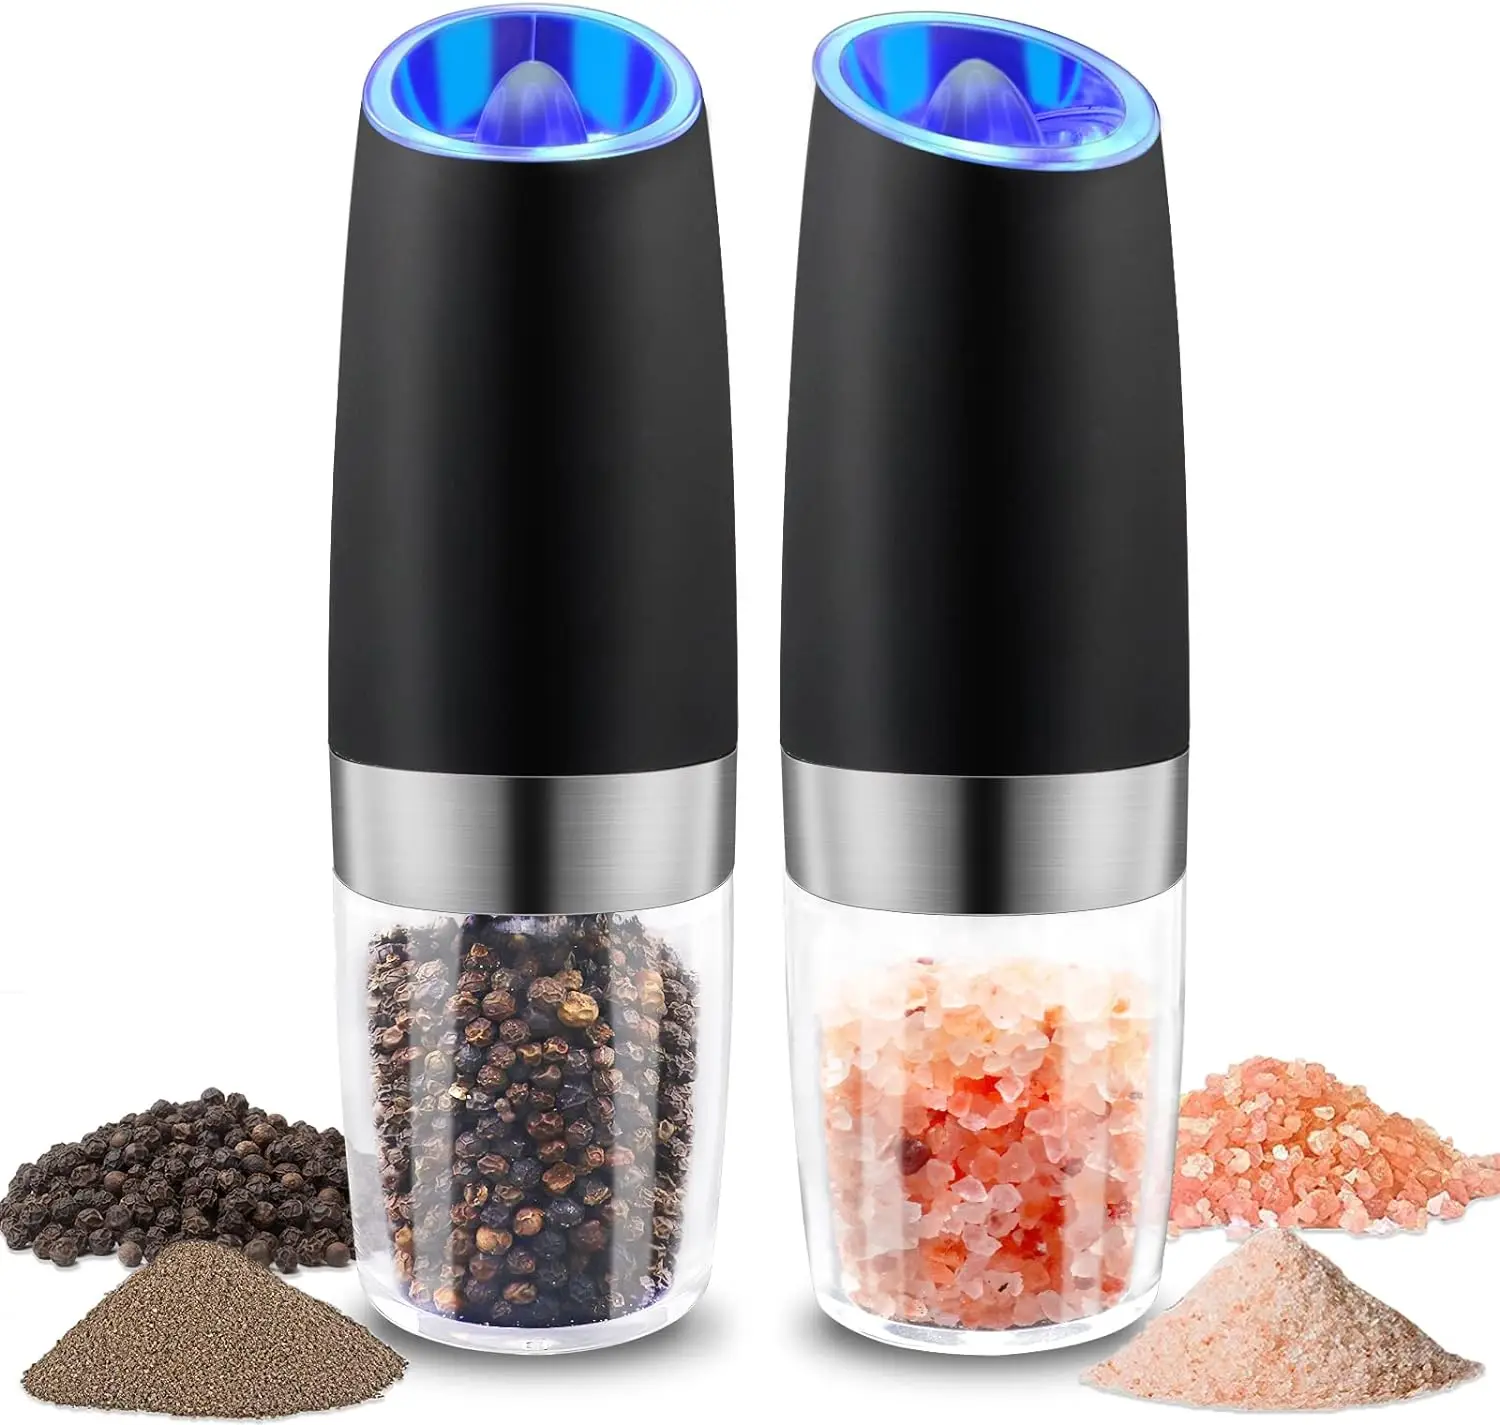 

Electric Salt and Pepper Grinder Set with LED Blue Light Pepper Shaker Gravity Spice Mill Adjustable Grinder Kitchen Mill Tool